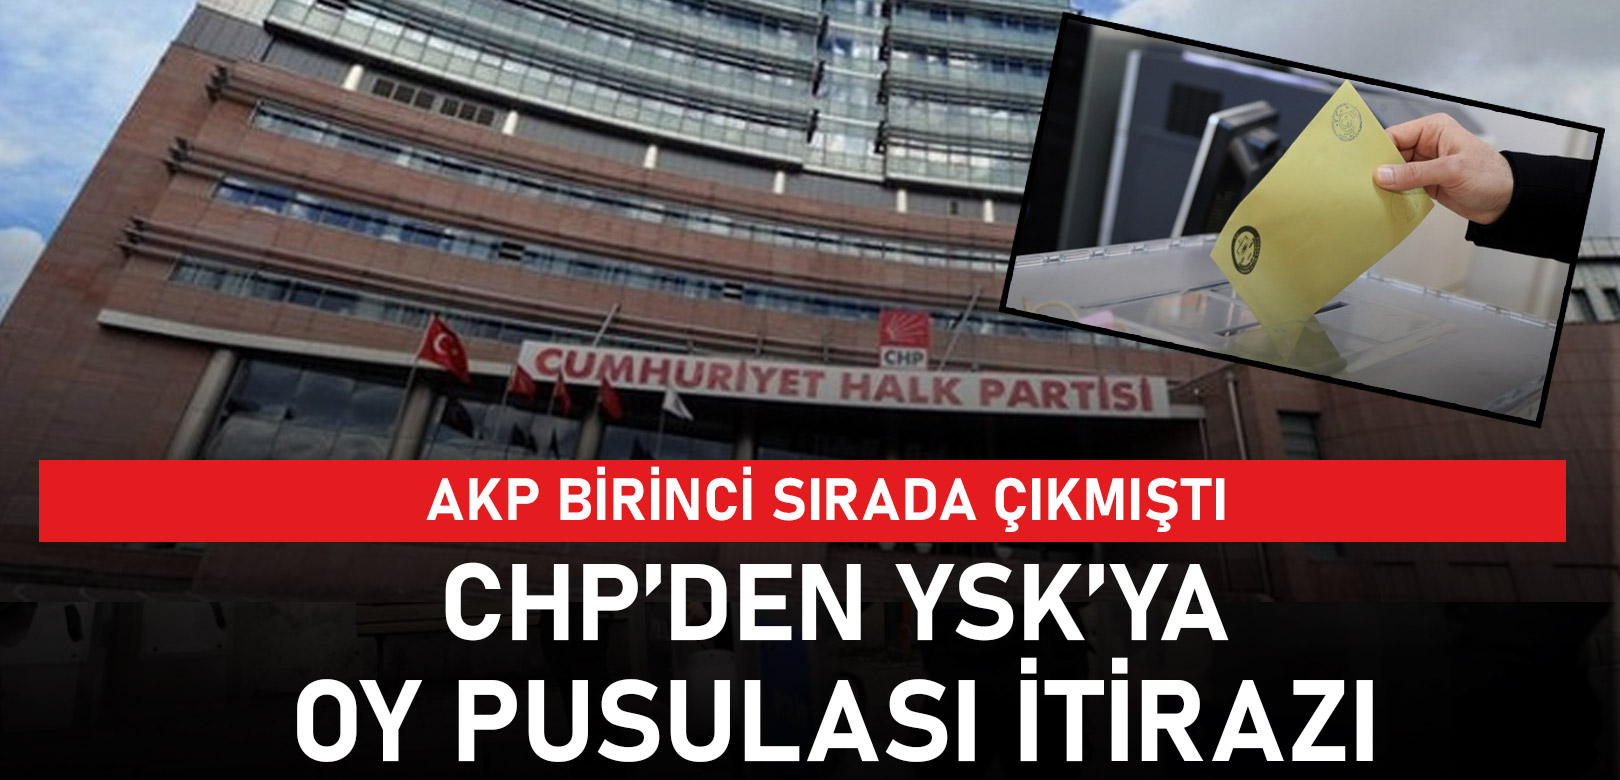 AKP birinci sırada çıkmıştı: CHP'den YSK'ye 'pusula' itirazı